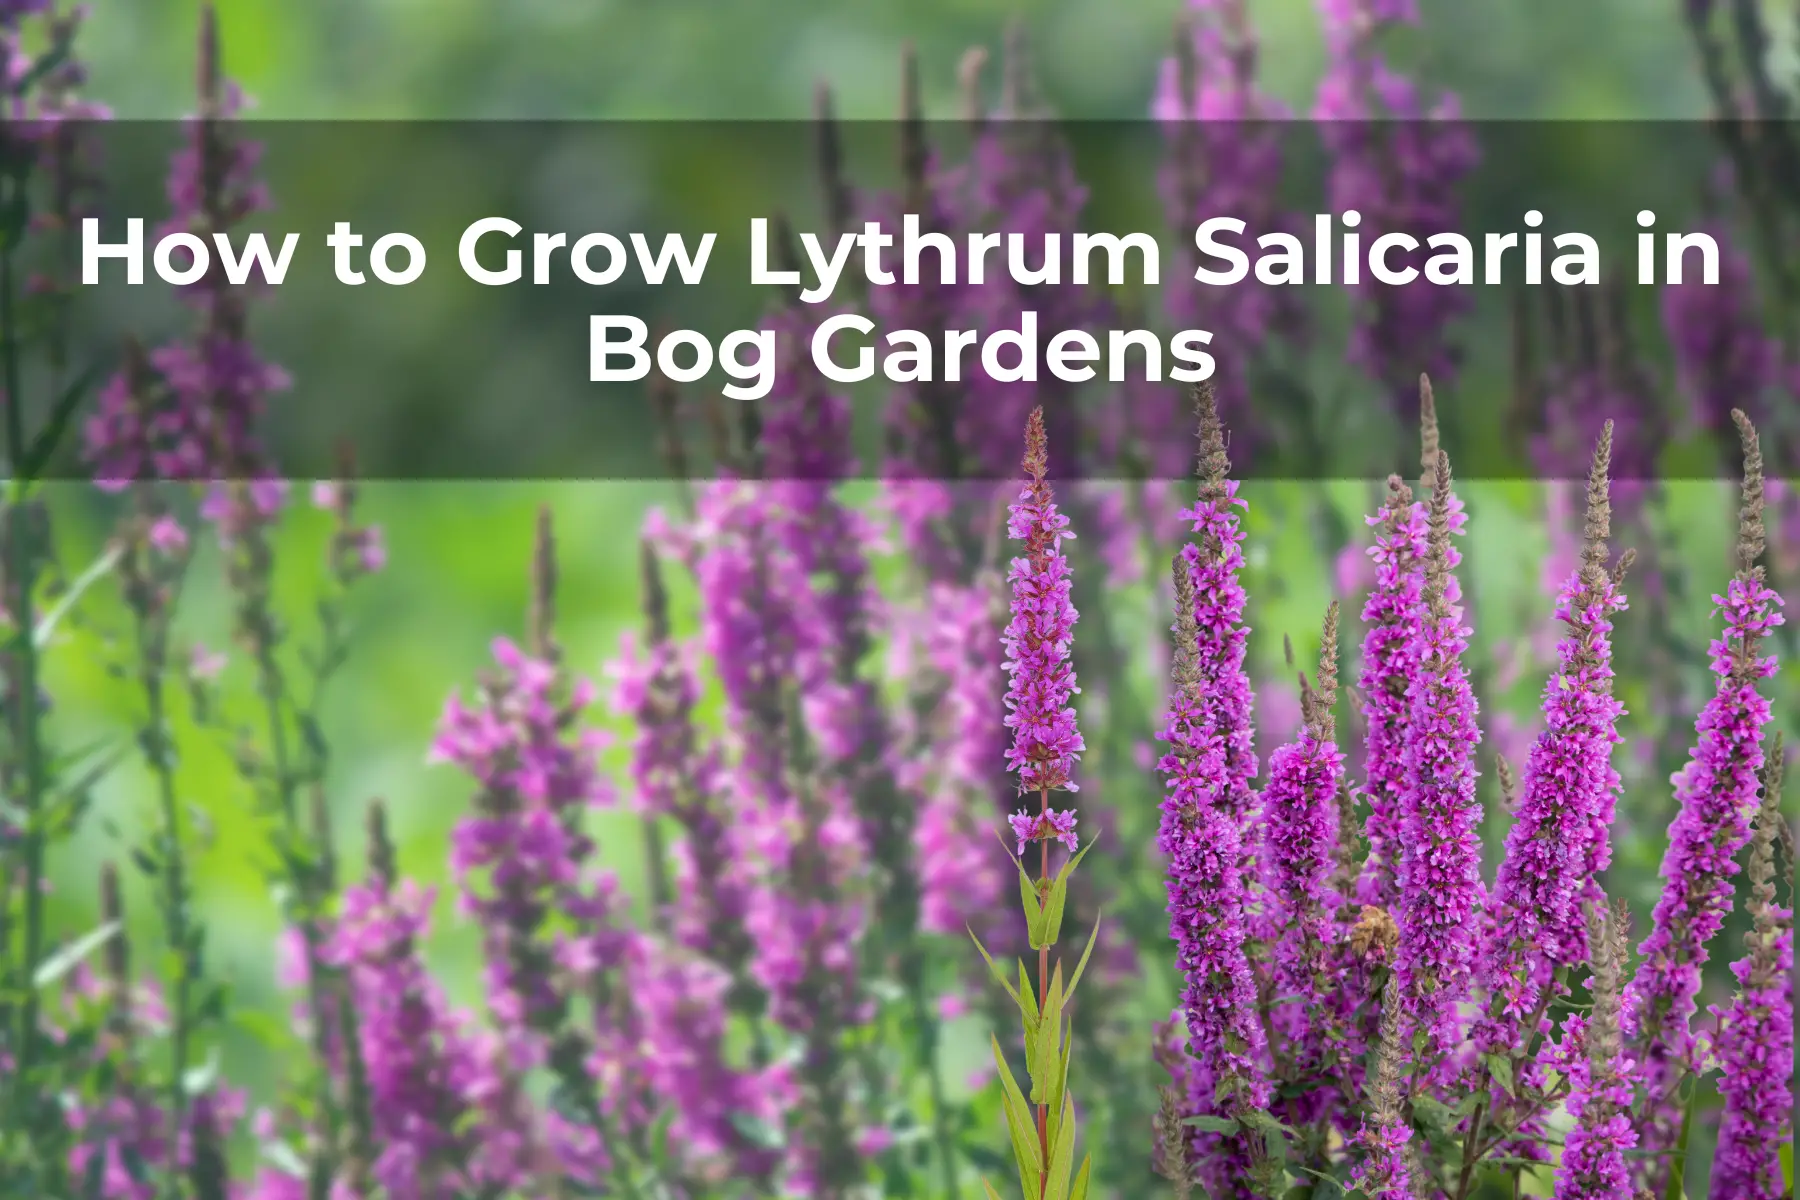 How to Grow Lythrum Salicaria in Bog Gardens